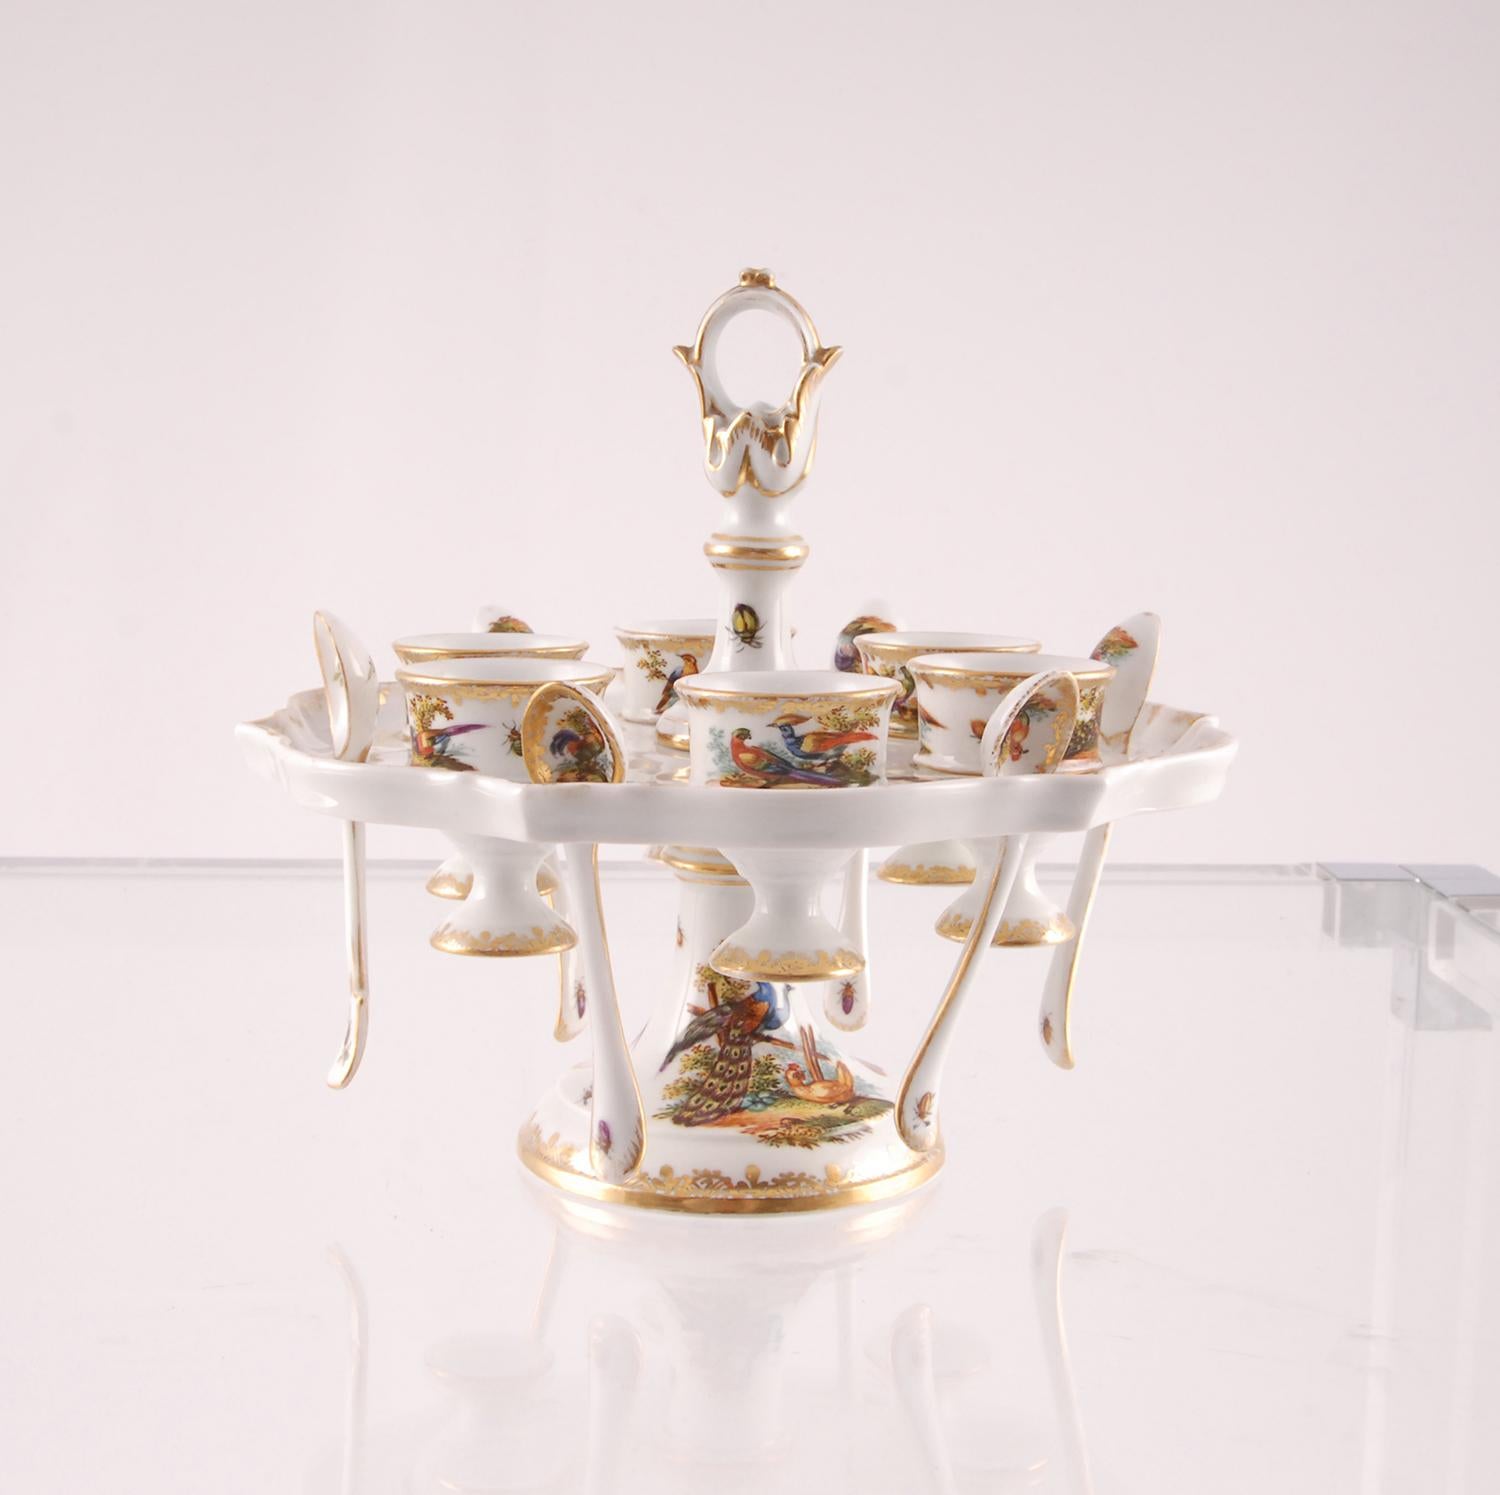 Porcelain Egg Stand Cruet 18th century Meissen Style Victorian German Handmade 8